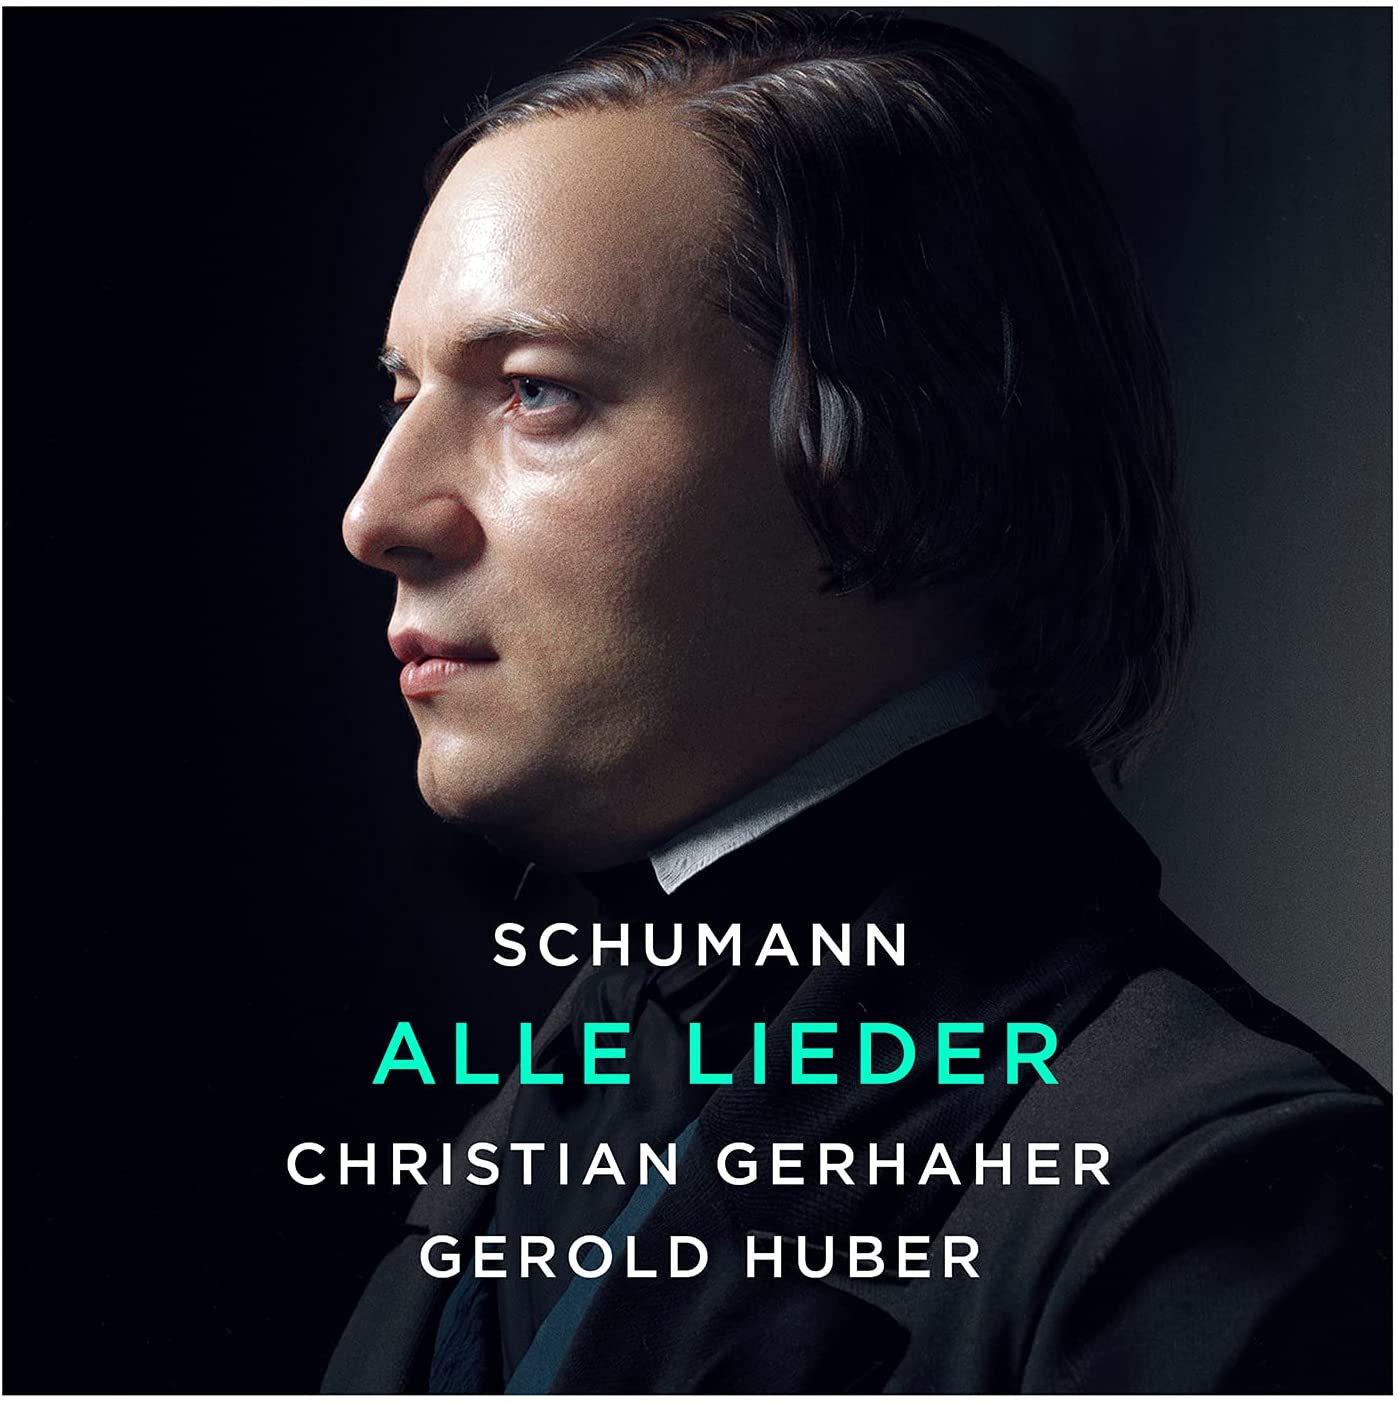 Schumann Alle Lieder